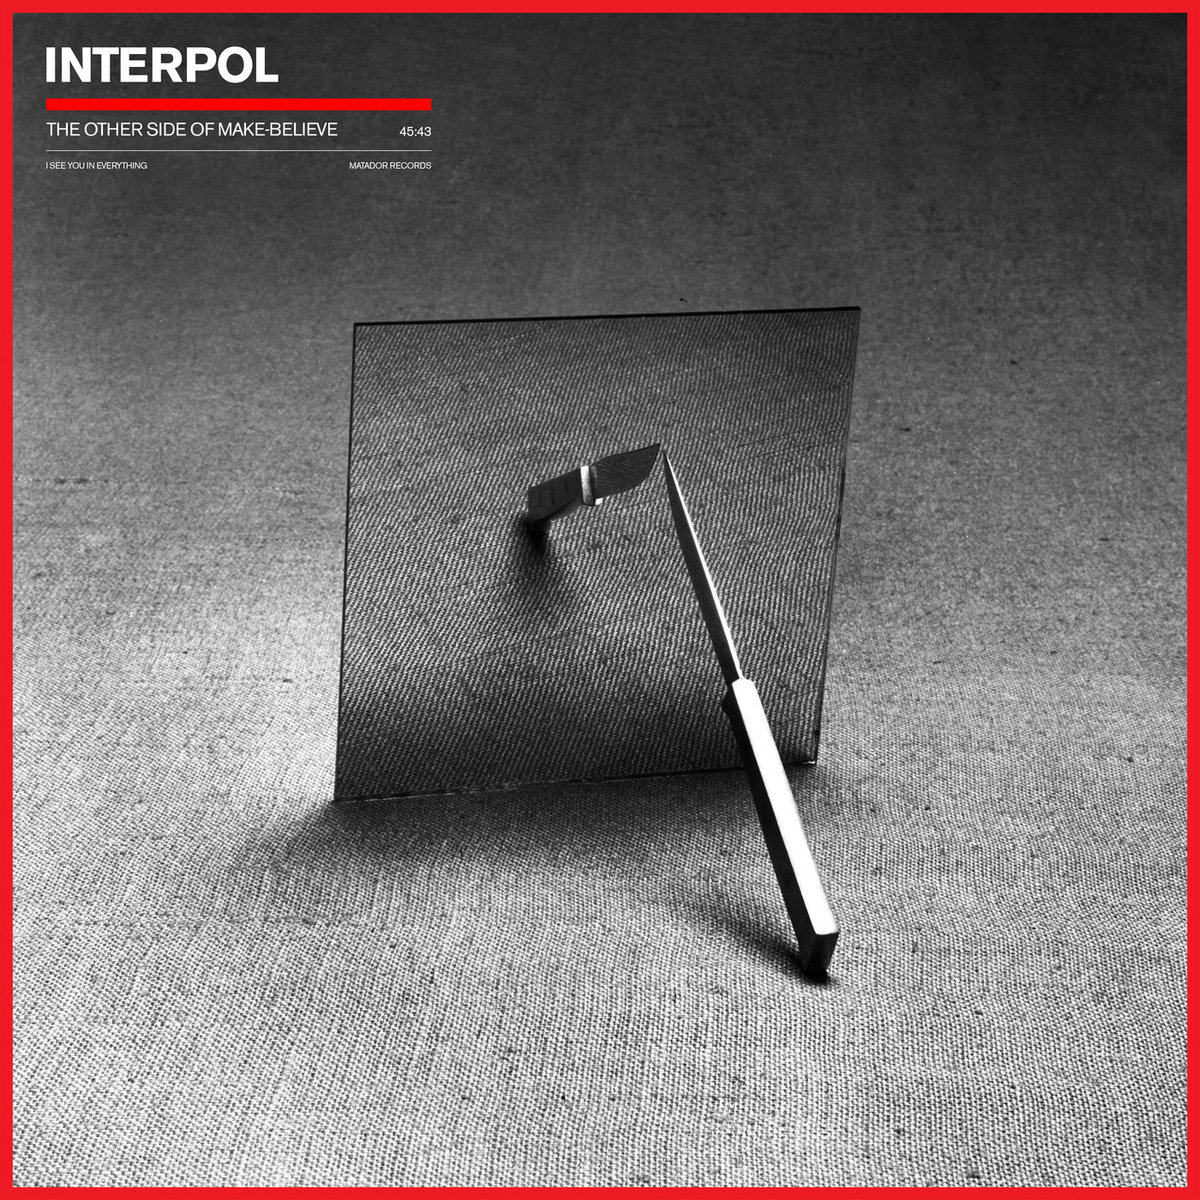 INTERPOL cover